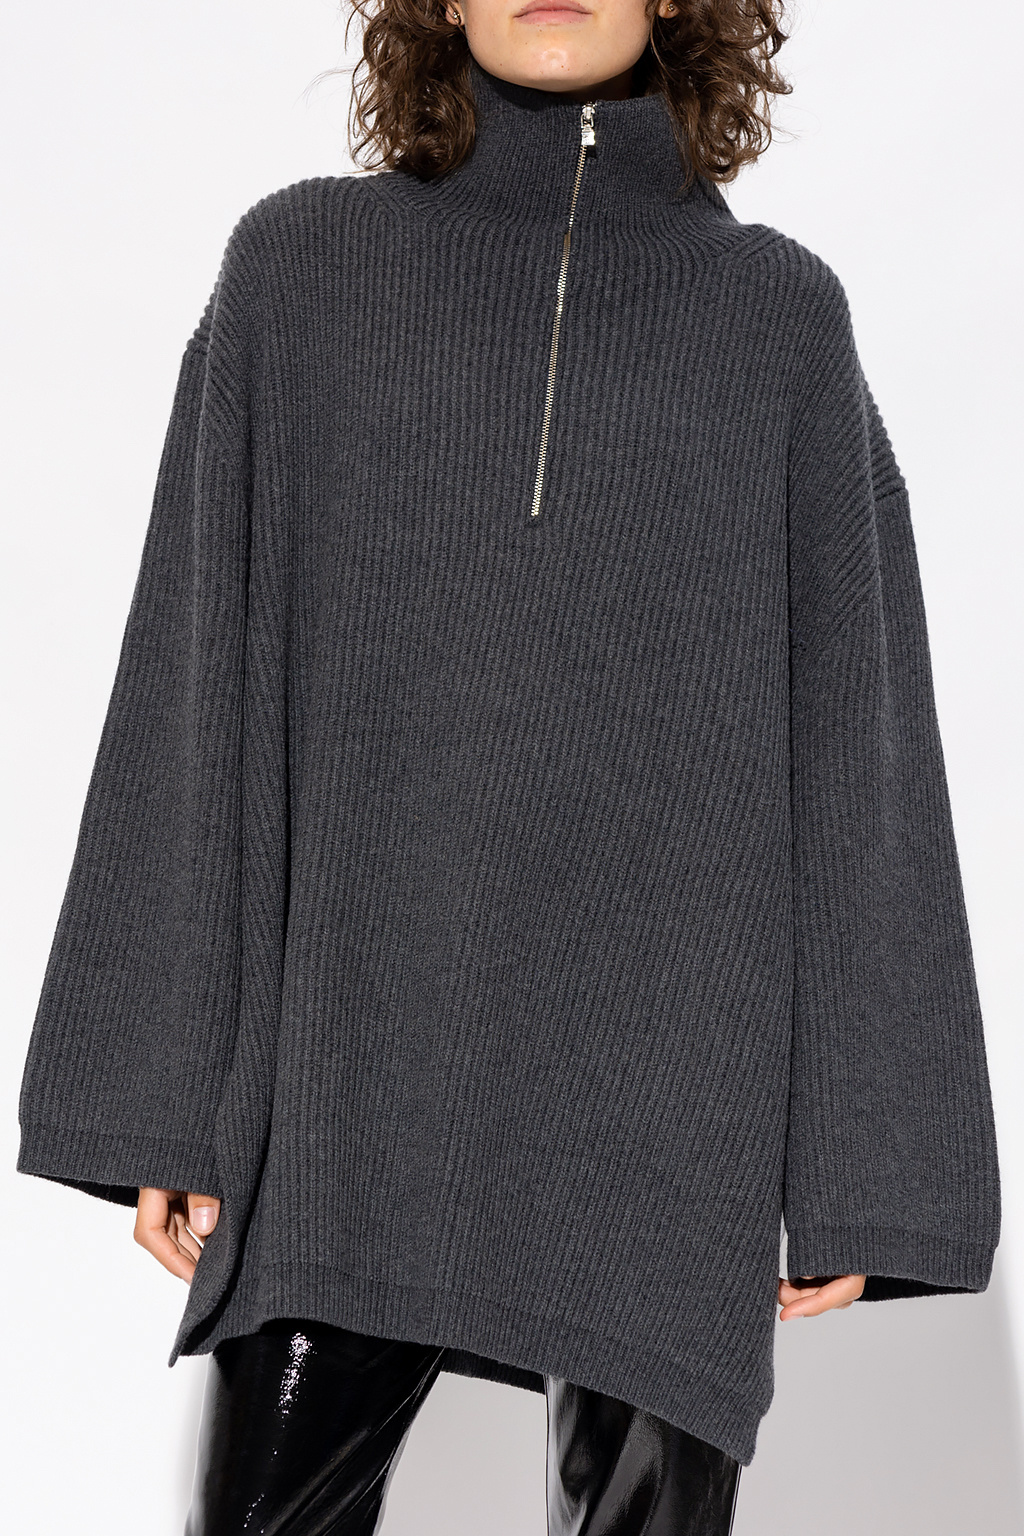 Totême Oversize turtleneck Sweater sweater